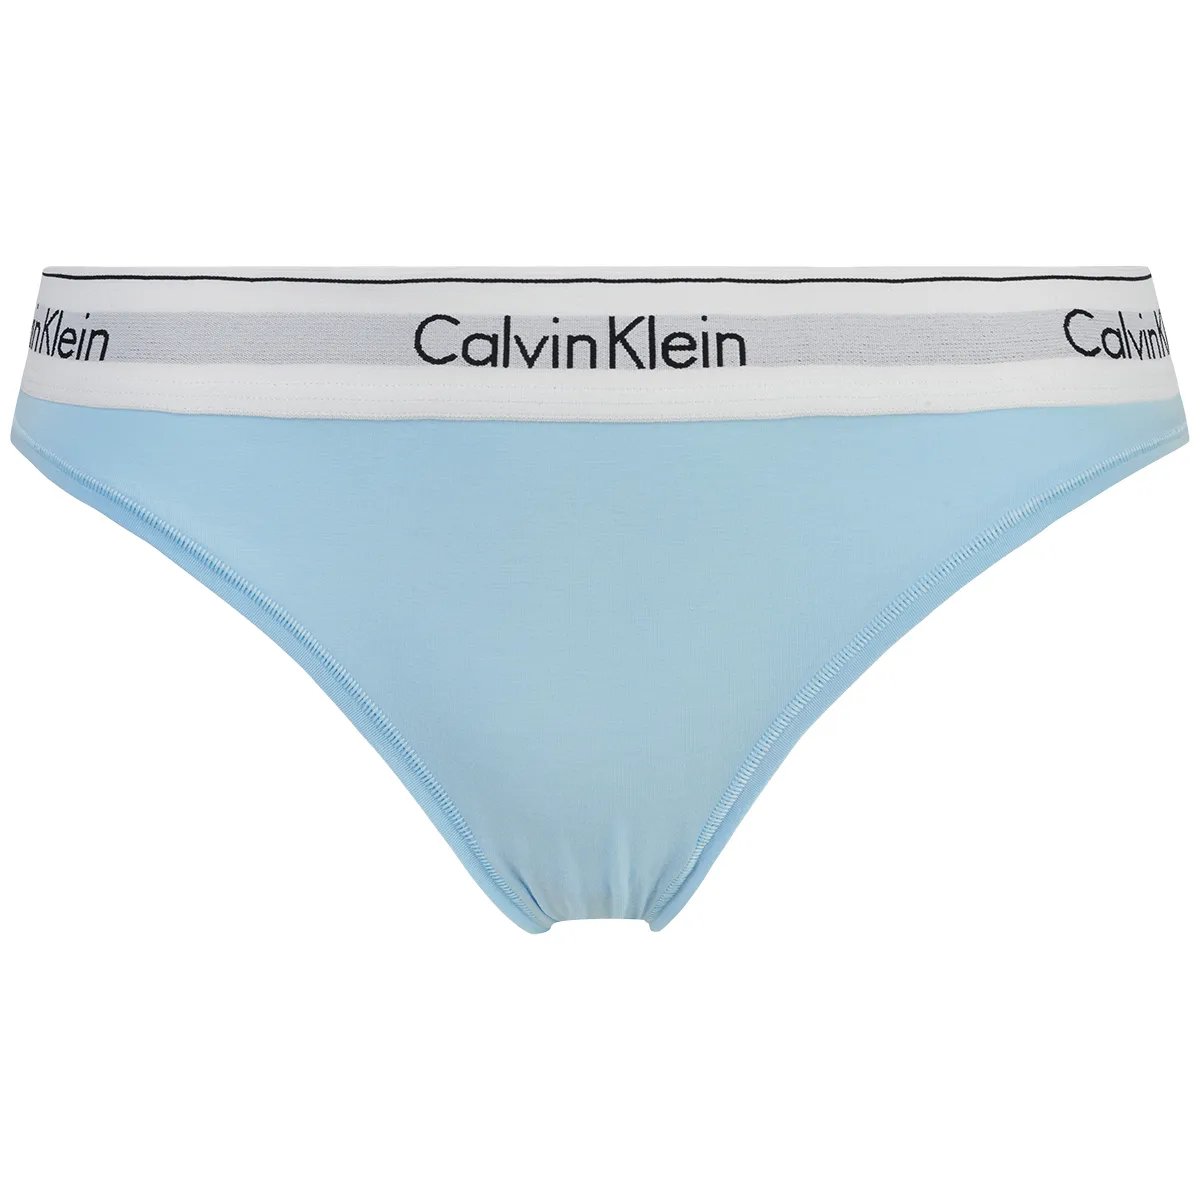 Calvin Klein stringtrosa, blå • Pris 125.4 kr.